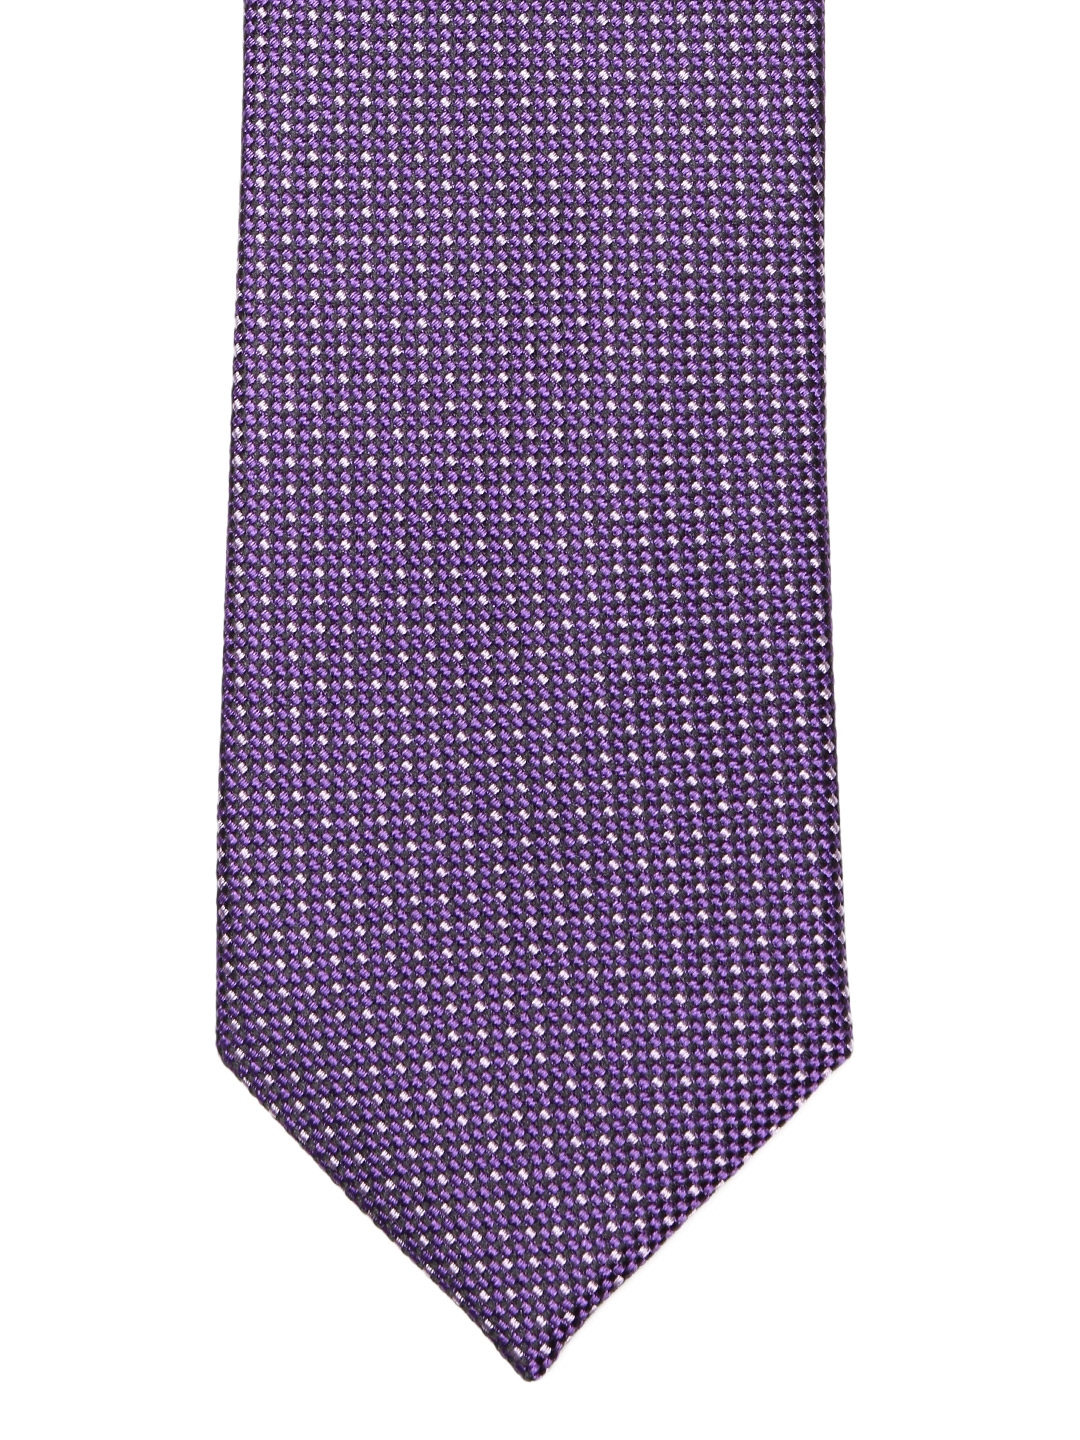 Buy Louis Philippe Purple Woven Design Broad Tie - Ties for Men 2388415 ...